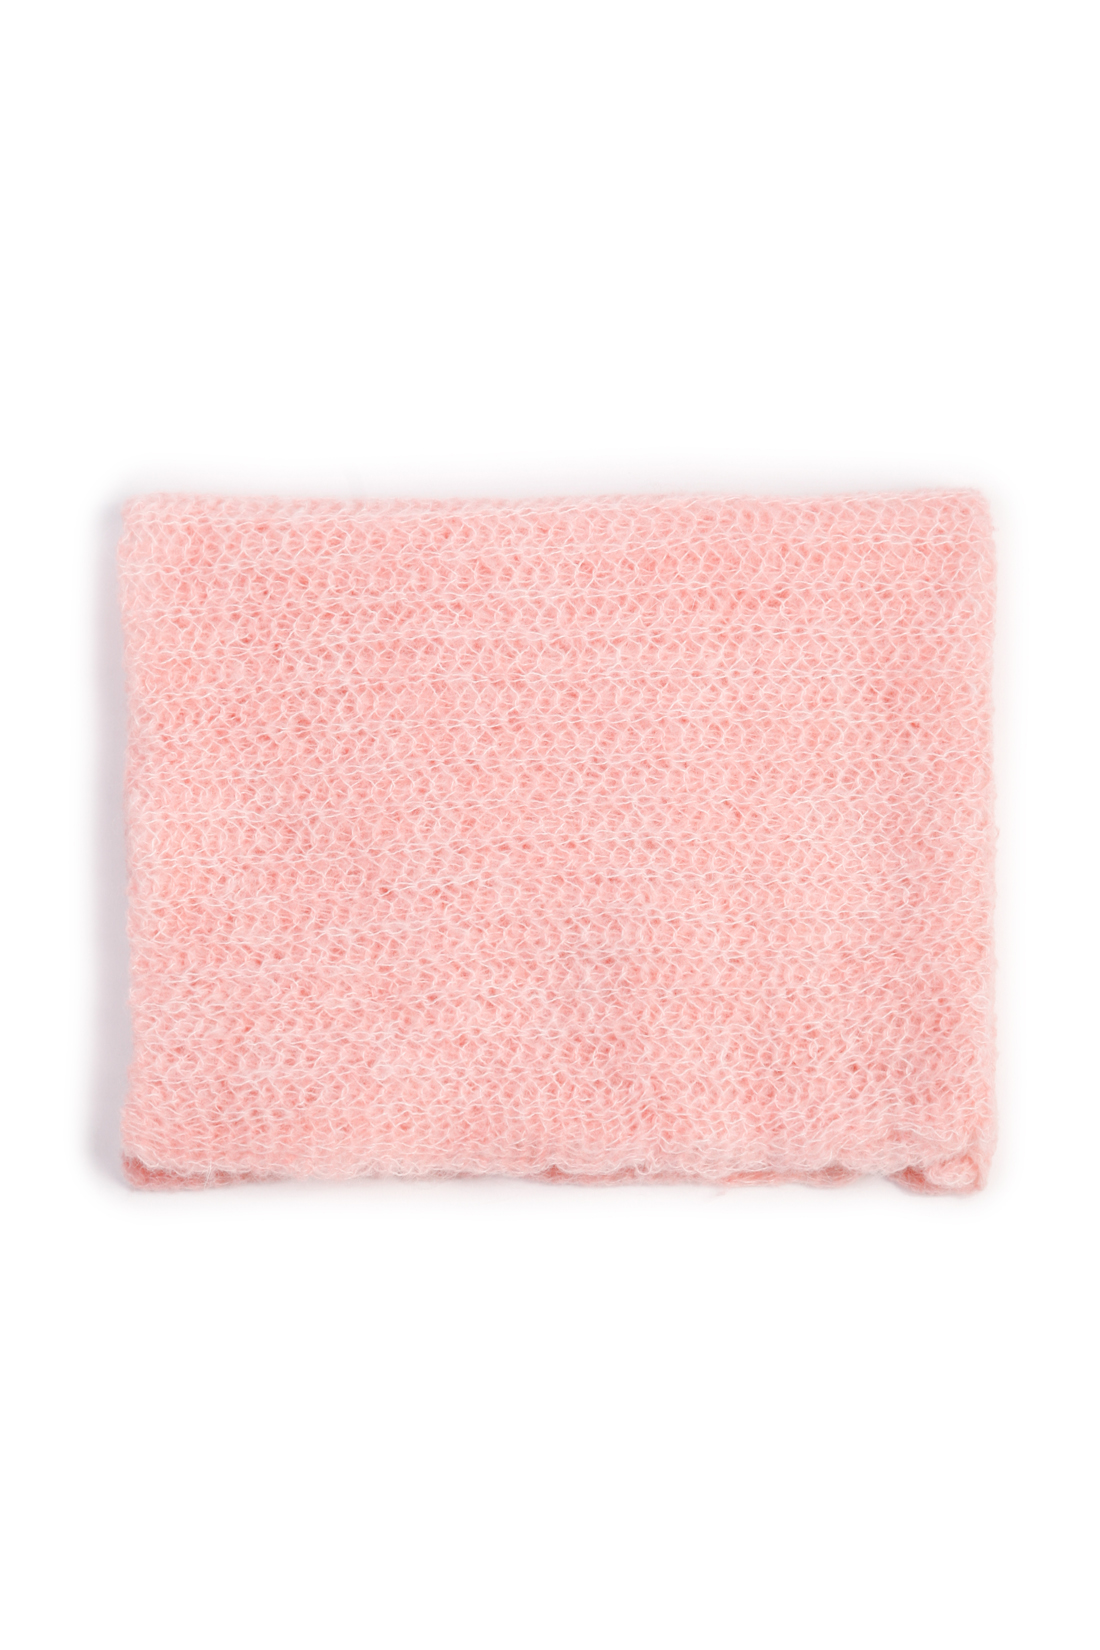 Шарф-снуд с мохером и альпакой (арт. baon B358553), размер Без/раз, цвет розовый Шарф-снуд с мохером и альпакой (арт. baon B358553) - фото 2